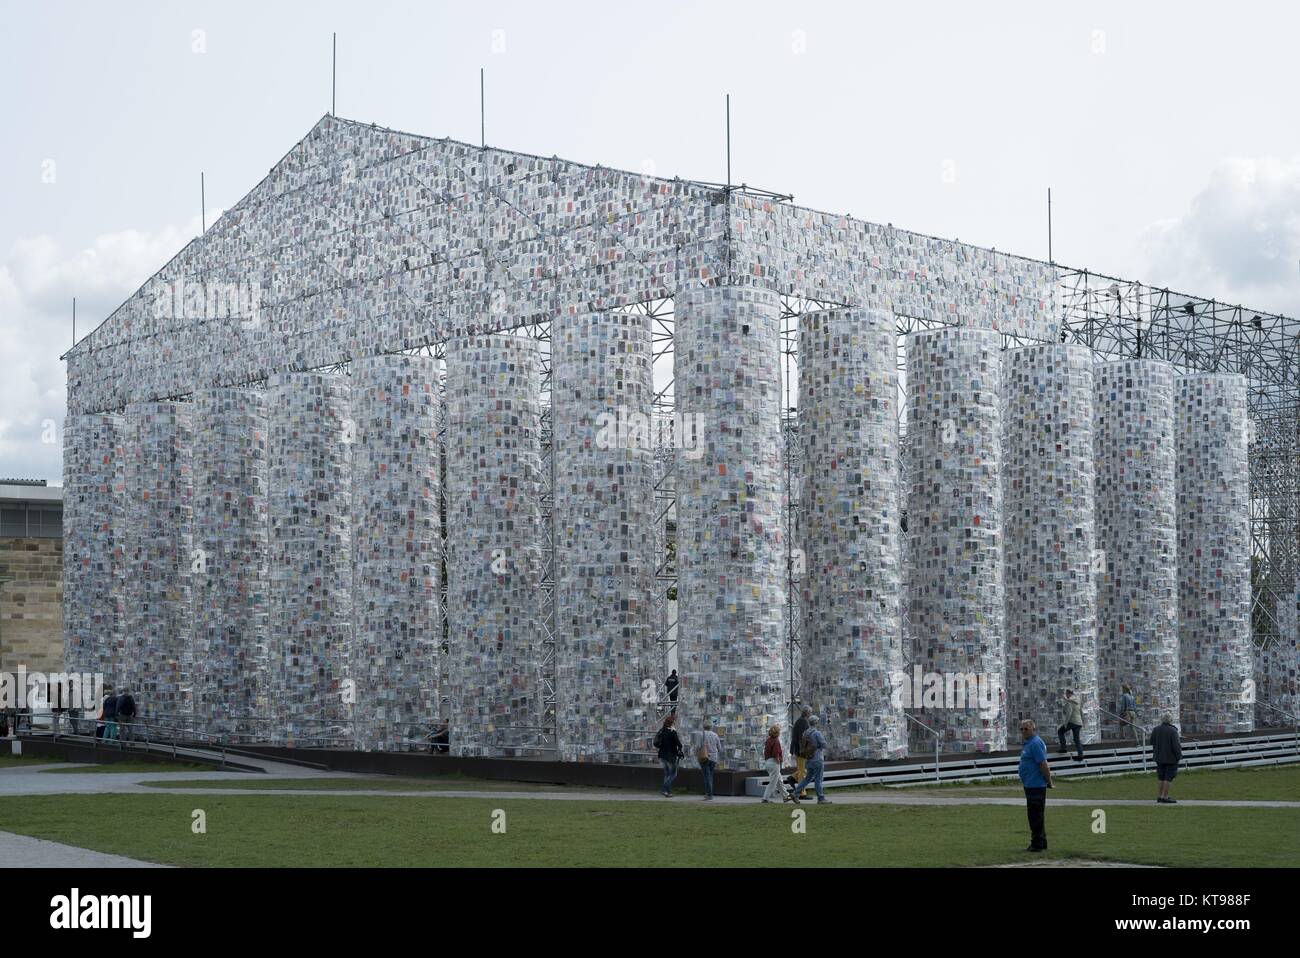 La documenta 14 Art Installation Panthéon des albums anglais par Marta Minujin sur Friedrich Square à Kassel , 22.8.2017 ATTENTION : COPYRIGHT DE L'ARTISTE DOIVENT être effacés dans le monde d'utilisation | Banque D'Images